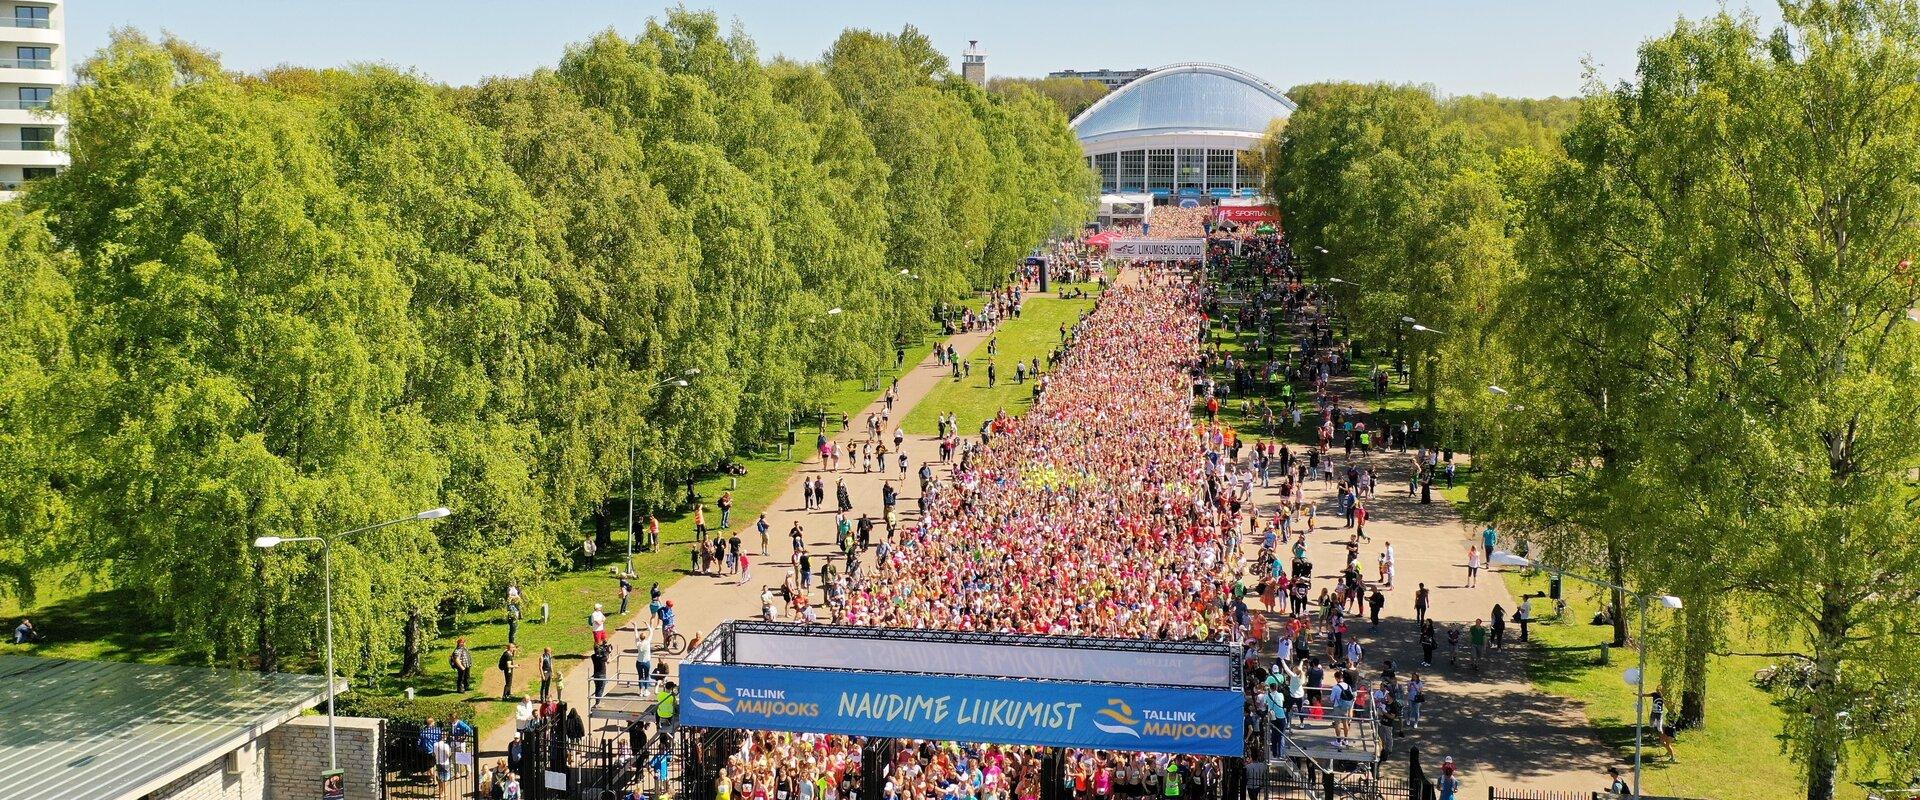 Toukokuun juoksu (LHV Maijooks) on ollut kautta aikojen Viron suurin naisille kohdistettu kuntoliikuntatapahtuma. Tällä juoksulla on ollut tärkeä rool